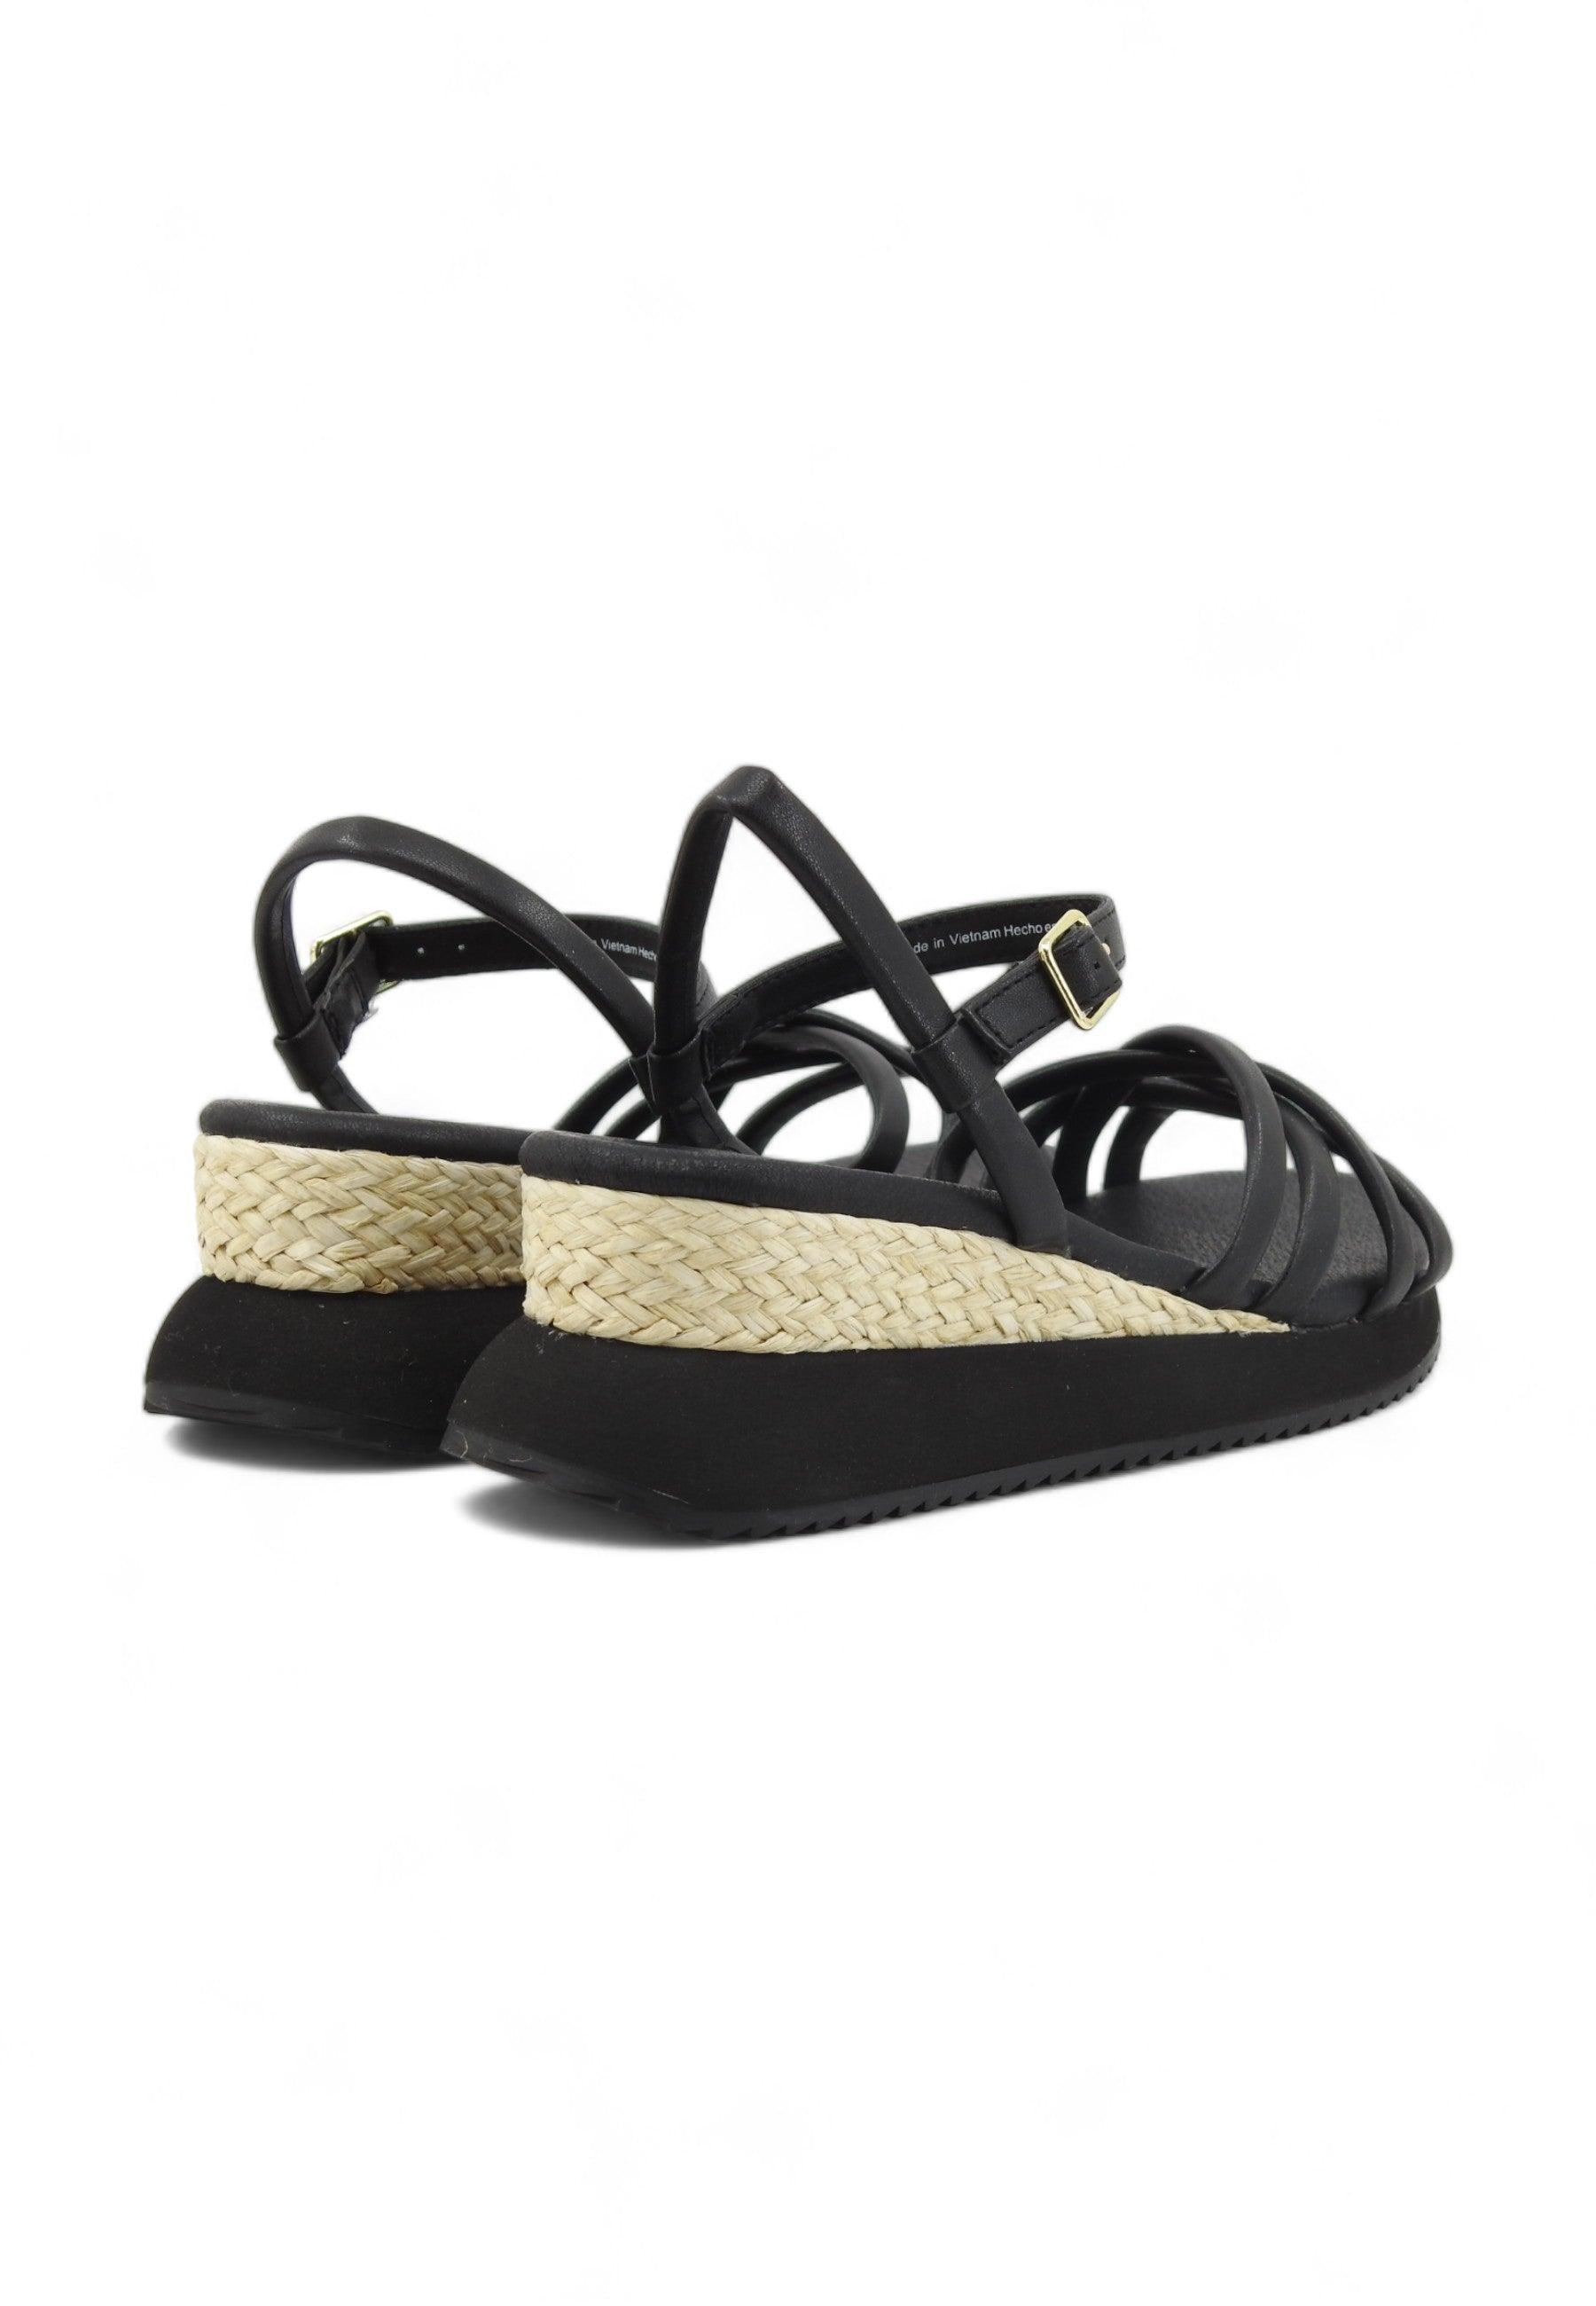 GIOSEPPO Permet Sandalo Donna Black 71060 - Sandrini Calzature e Abbigliamento